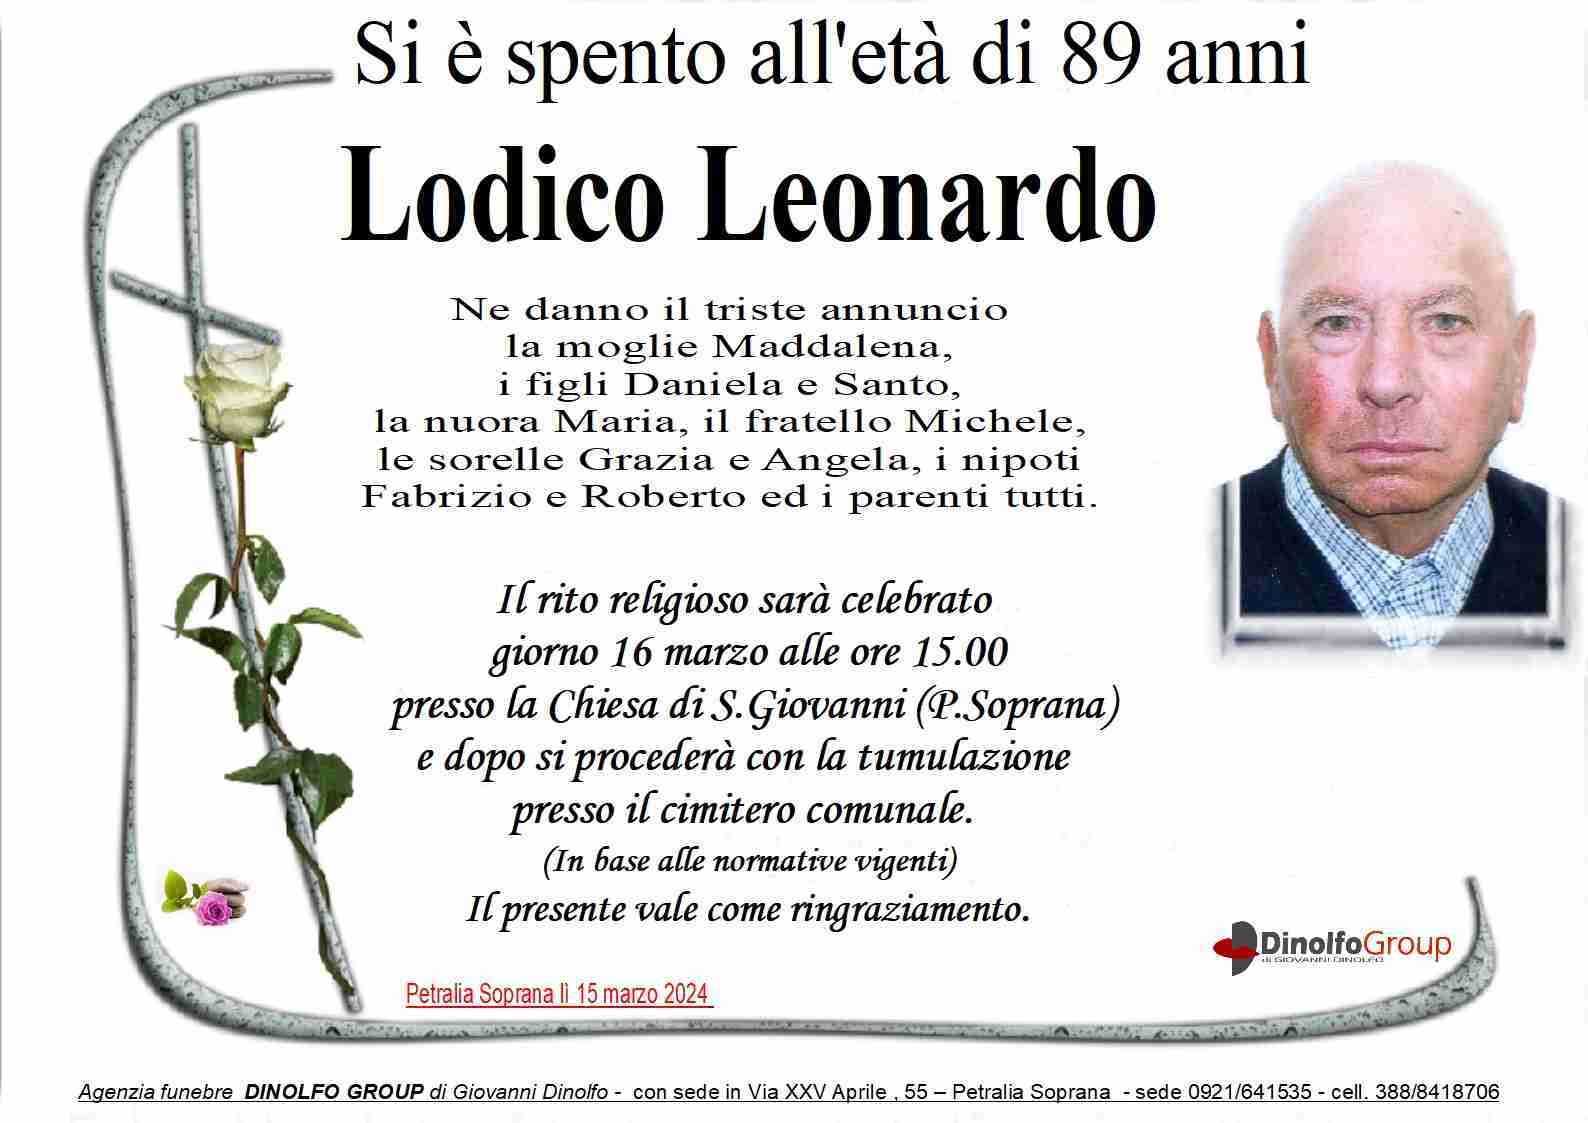 Leonardo Lodico